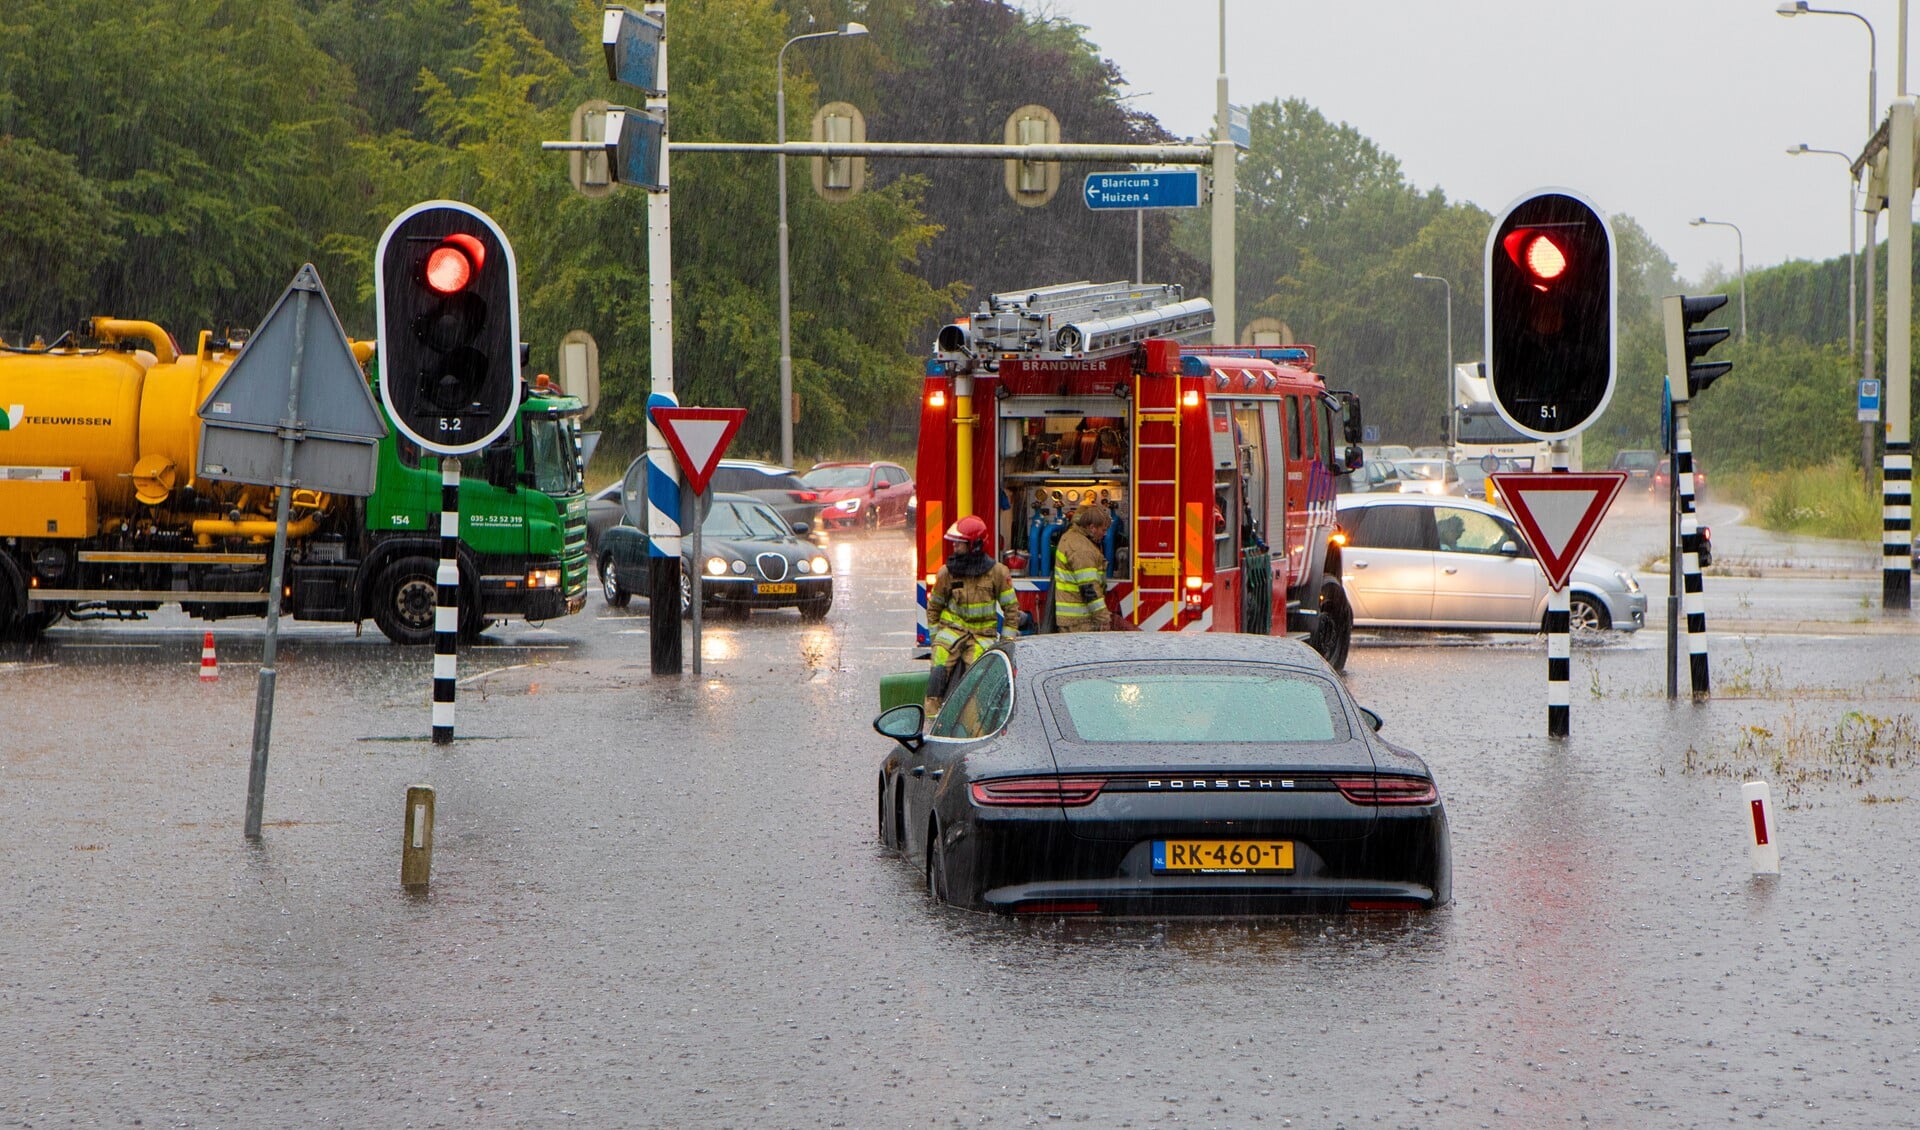 Aan het eind van de Crailoseweg moest de brandweer samen met Teeuwissen het water wegpompen om de weg begaanbaar te houden.